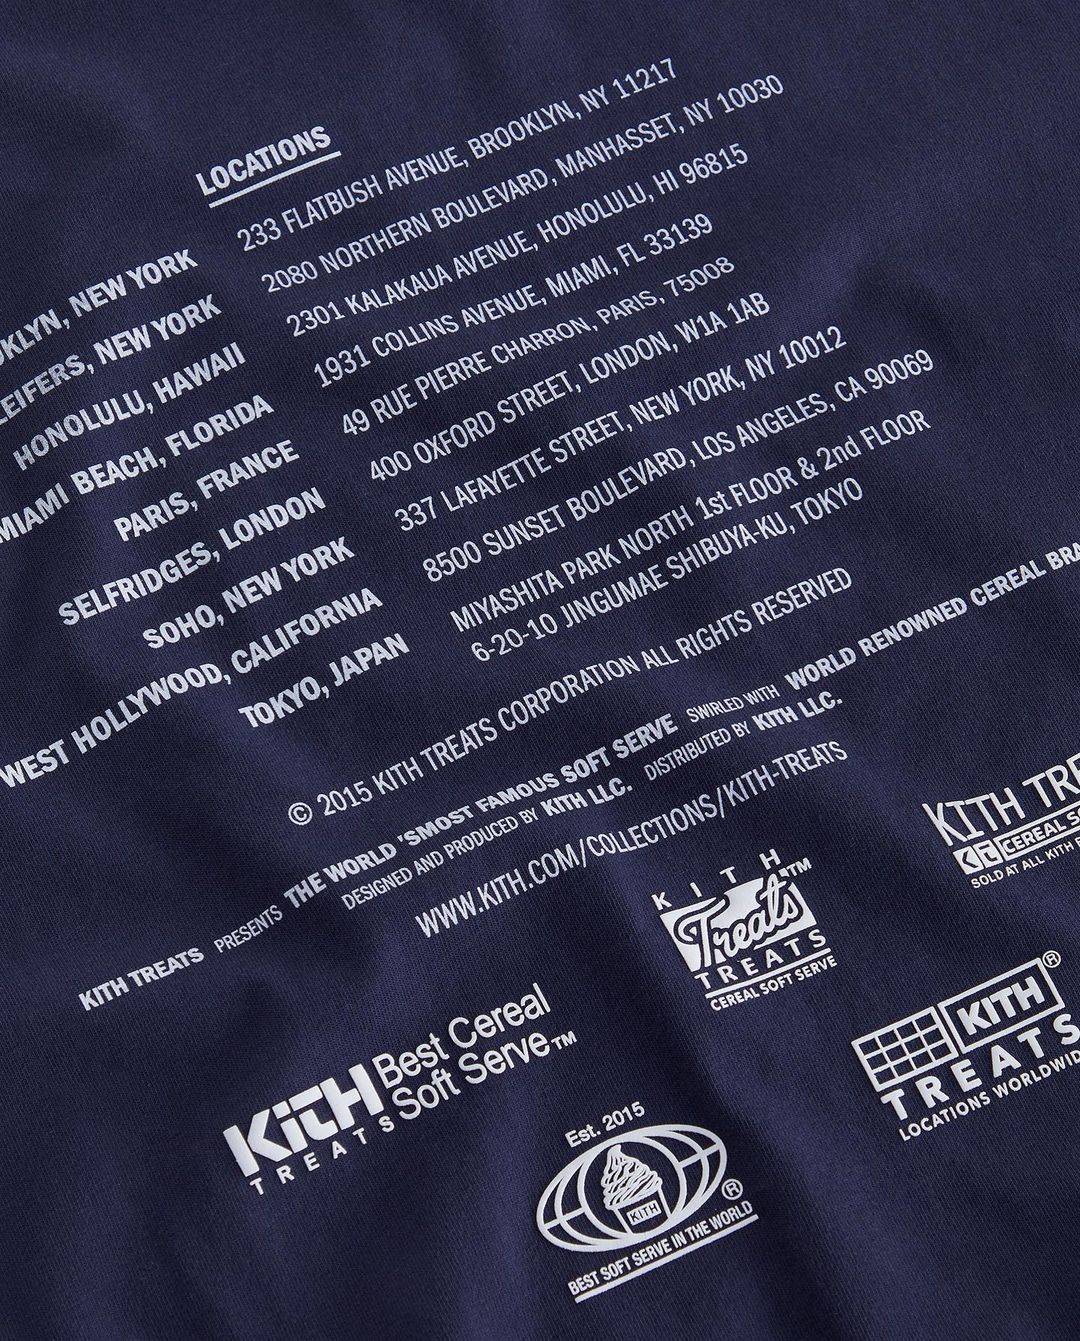 KITH TREATS からNYC/PARIS/TOKYOへの敬意を表した「Treats Tour」が8/20 発売 (キストーリーツ ツアー)